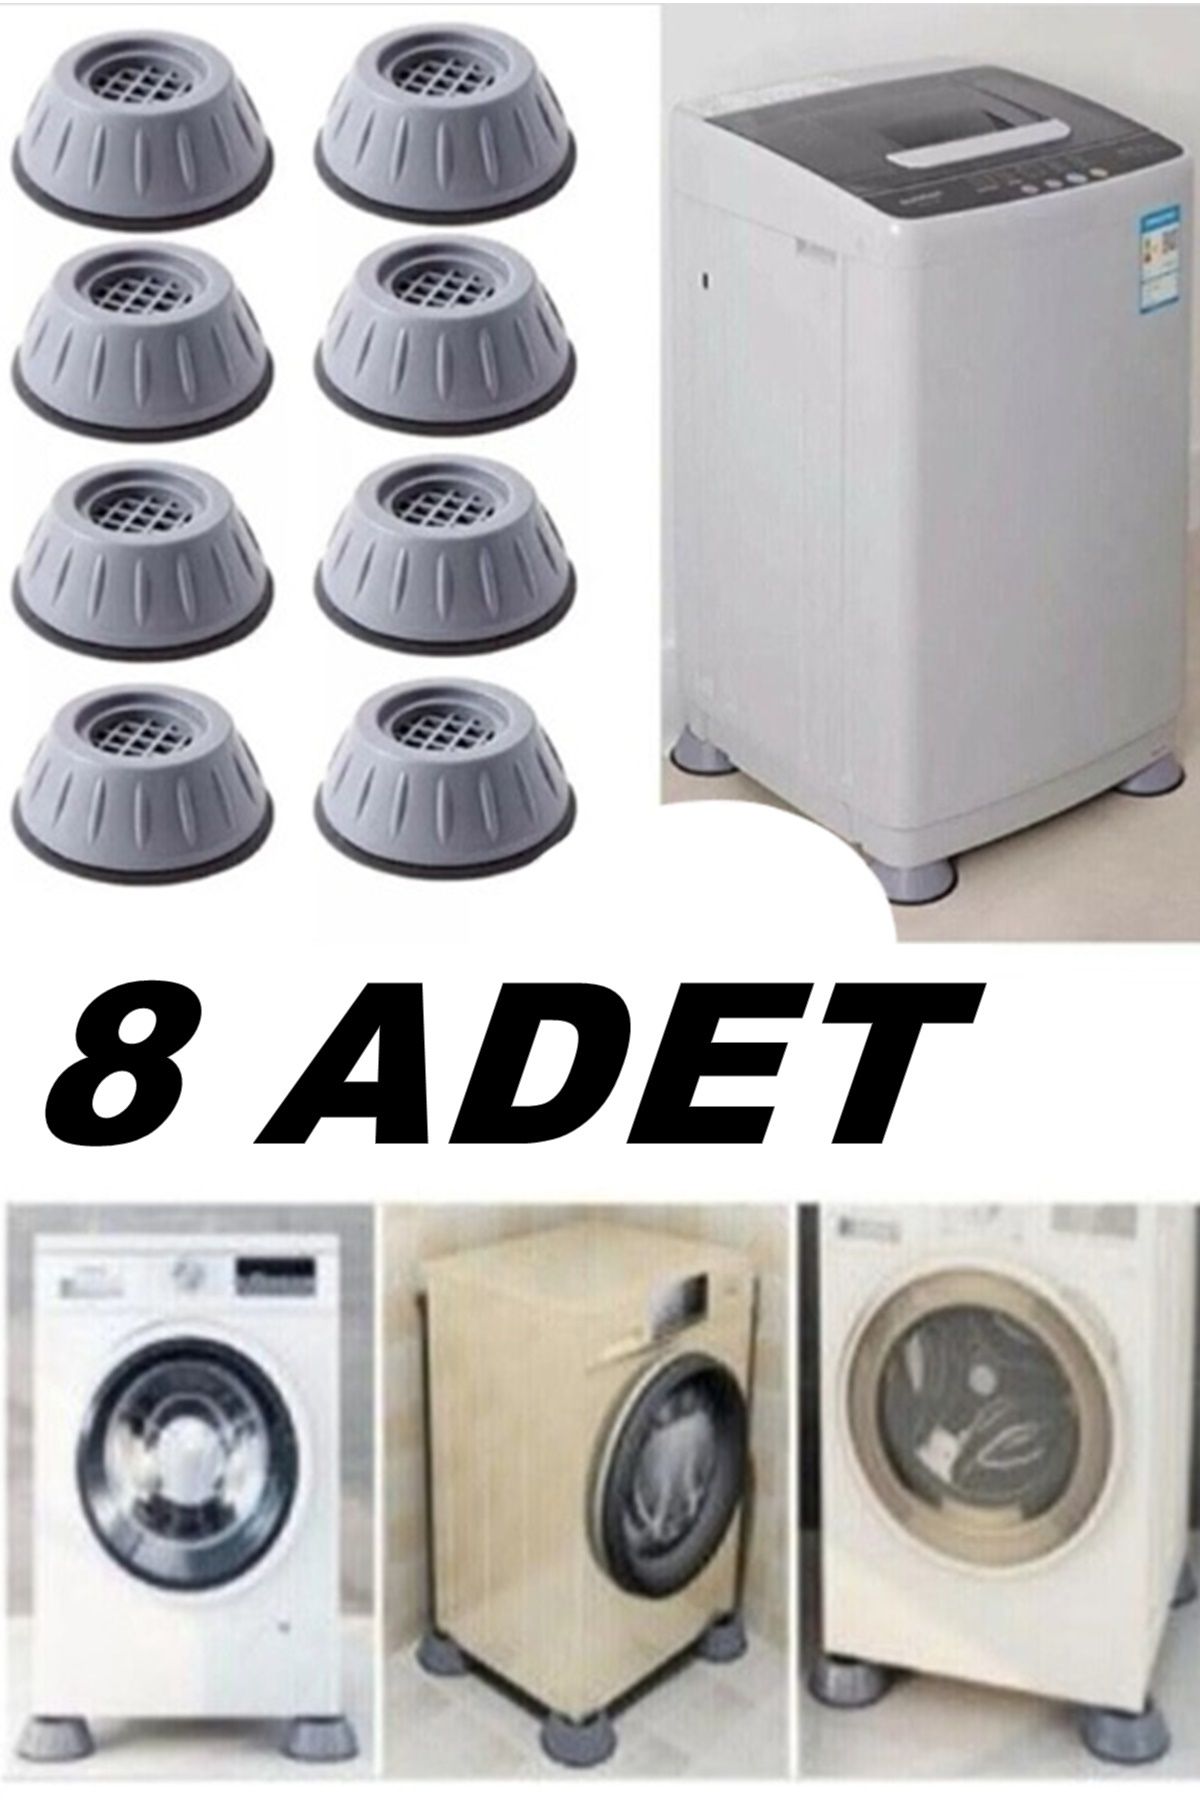 Kitchen Beauty 8 Adet Beyaz Eşya Altlığı Ayağı Çamaşır Bulaşık Makinası Buzdolabı Yükseltici Titreşim Önleyici